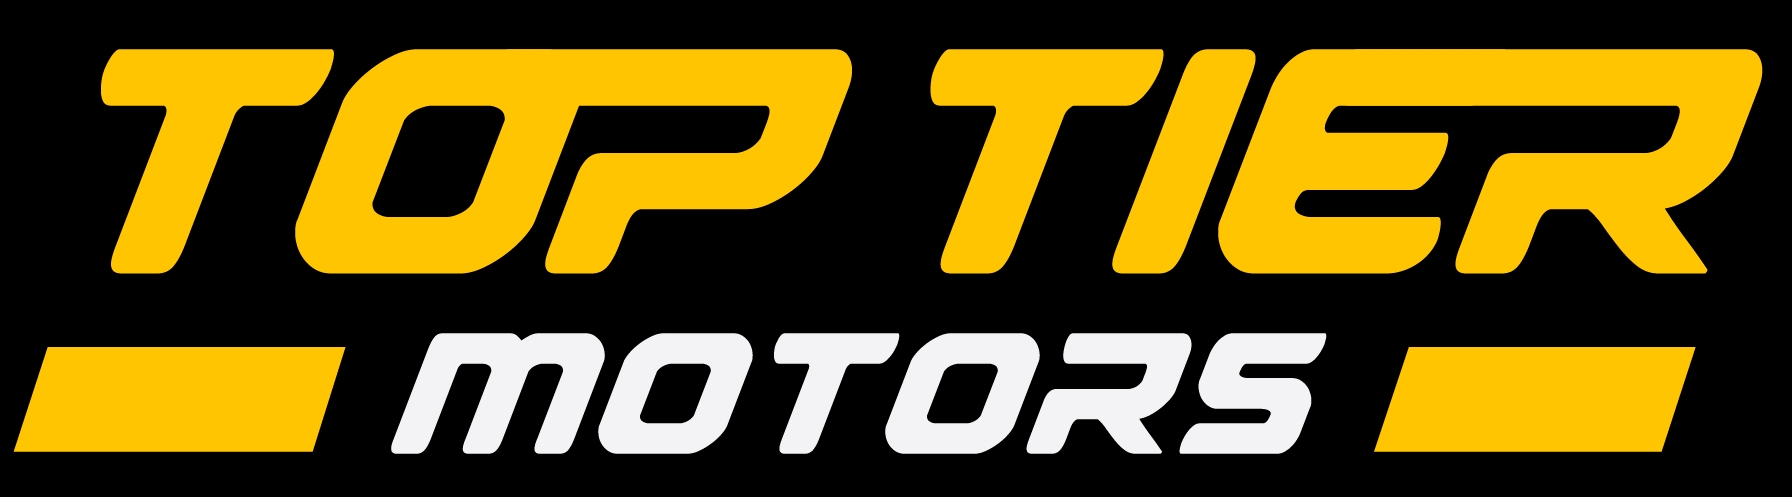 Top Tier Motors logo